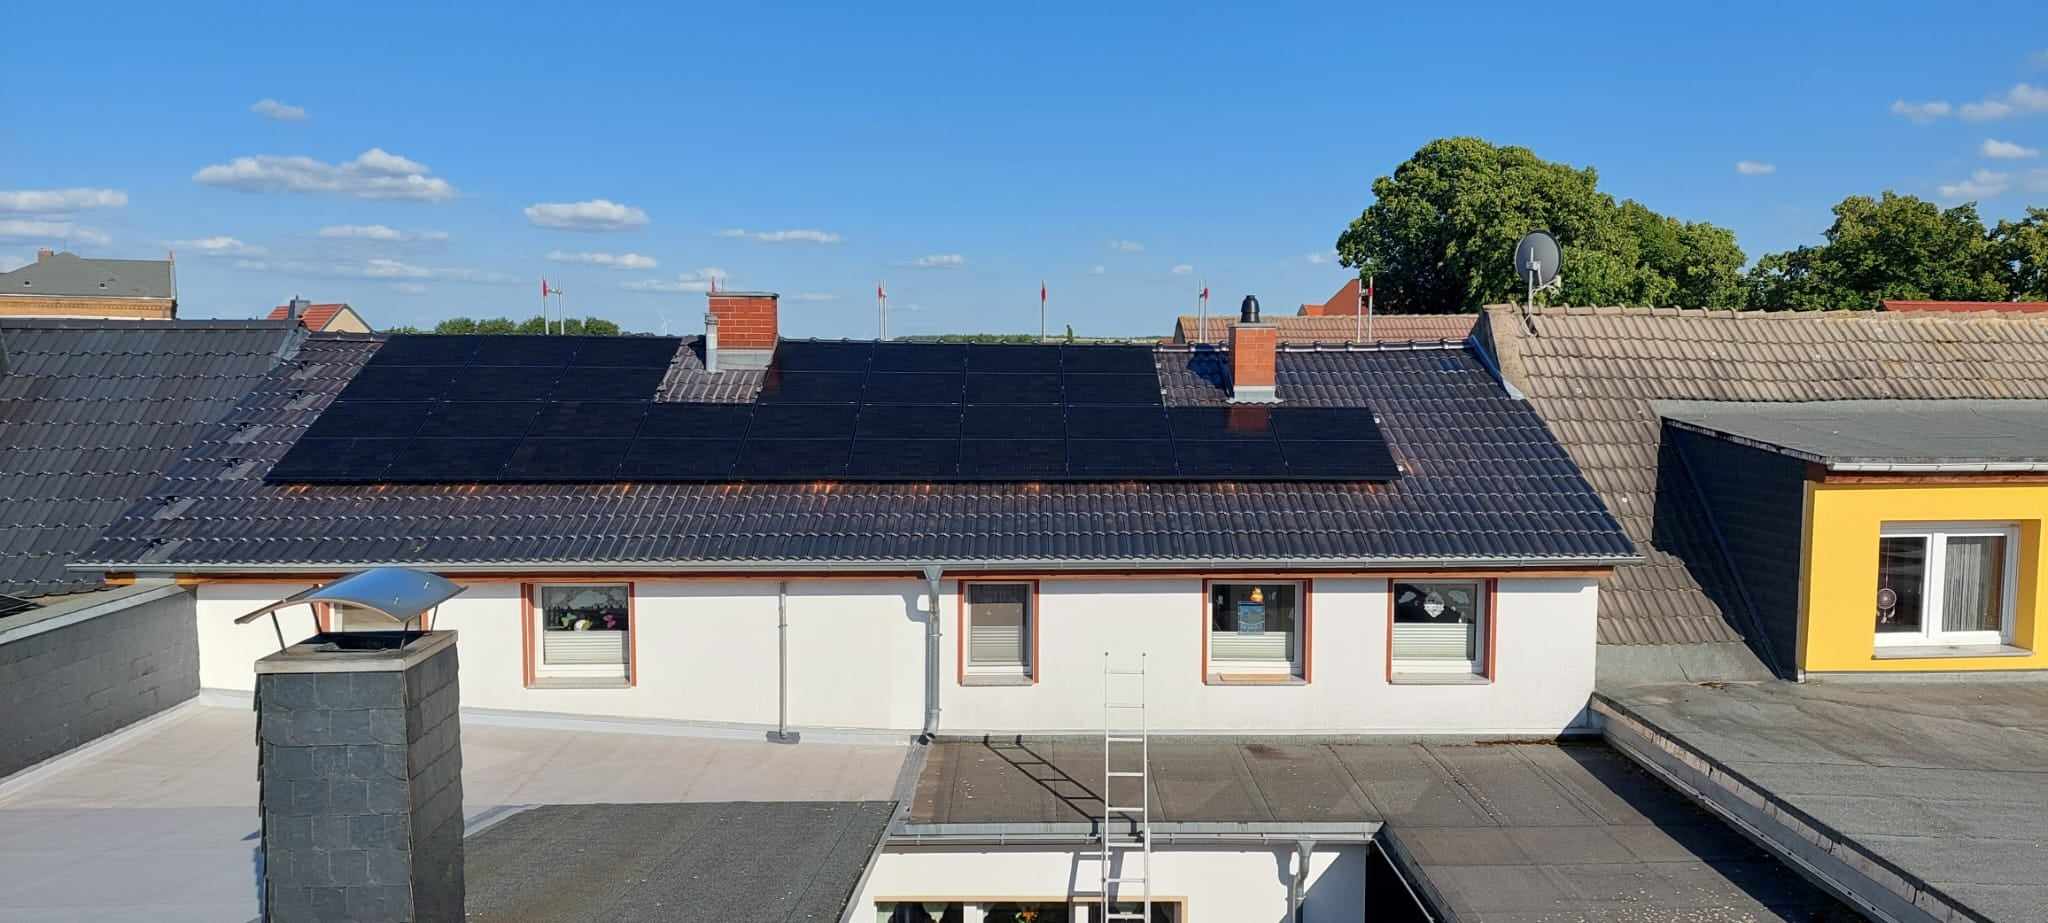 Photovoltaik-Haus-Nienburg